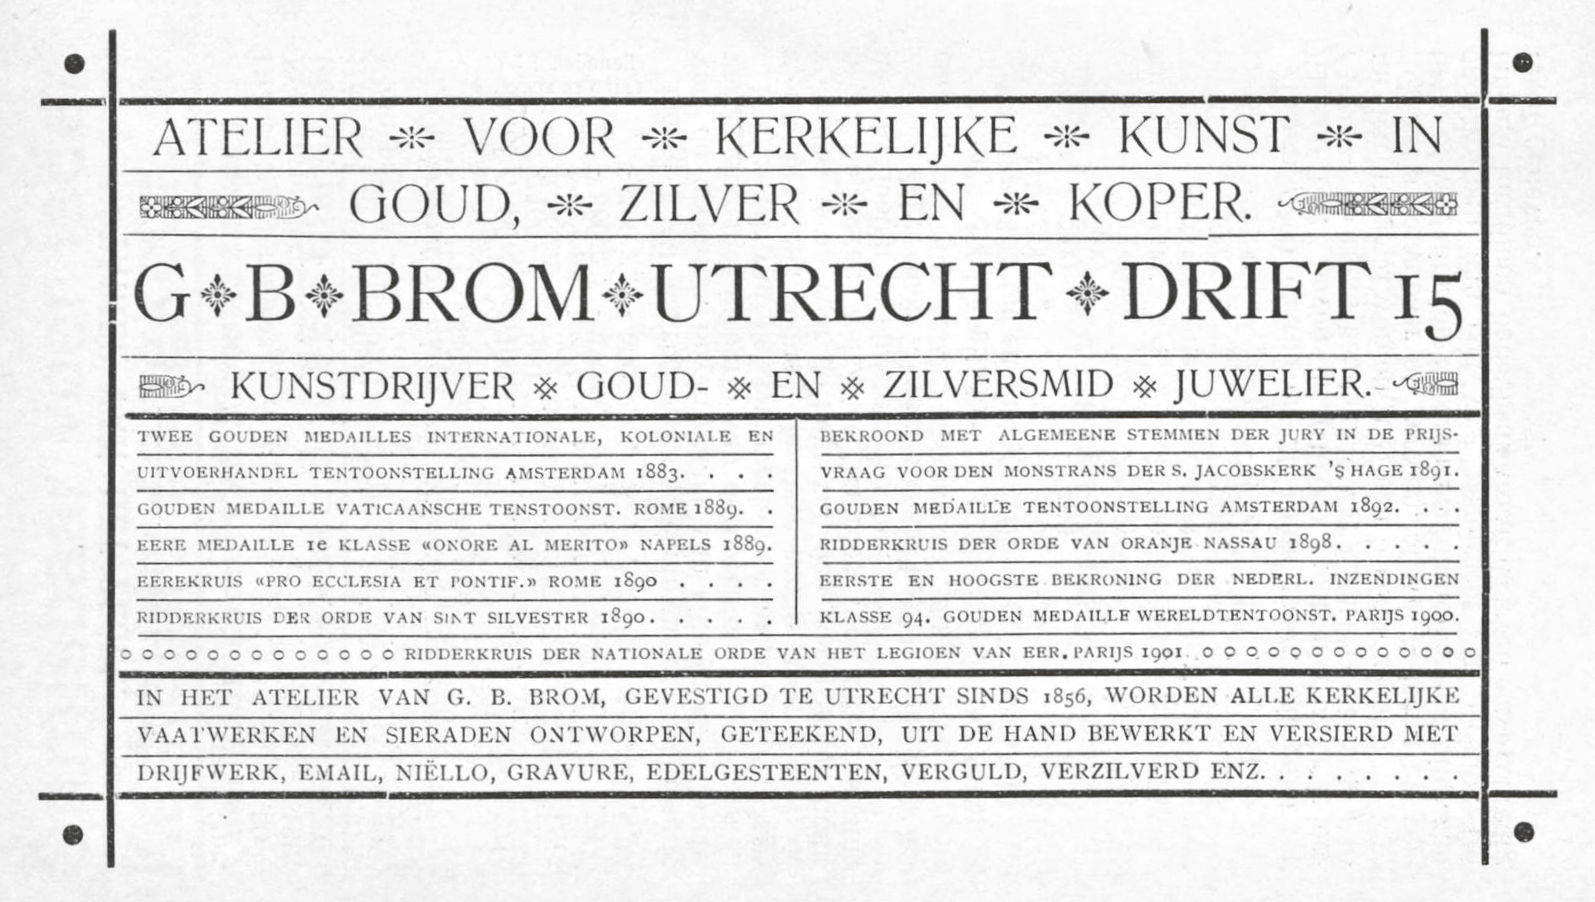 Advertentie Atelier voor kerkelijke kunst GB Brom 1902